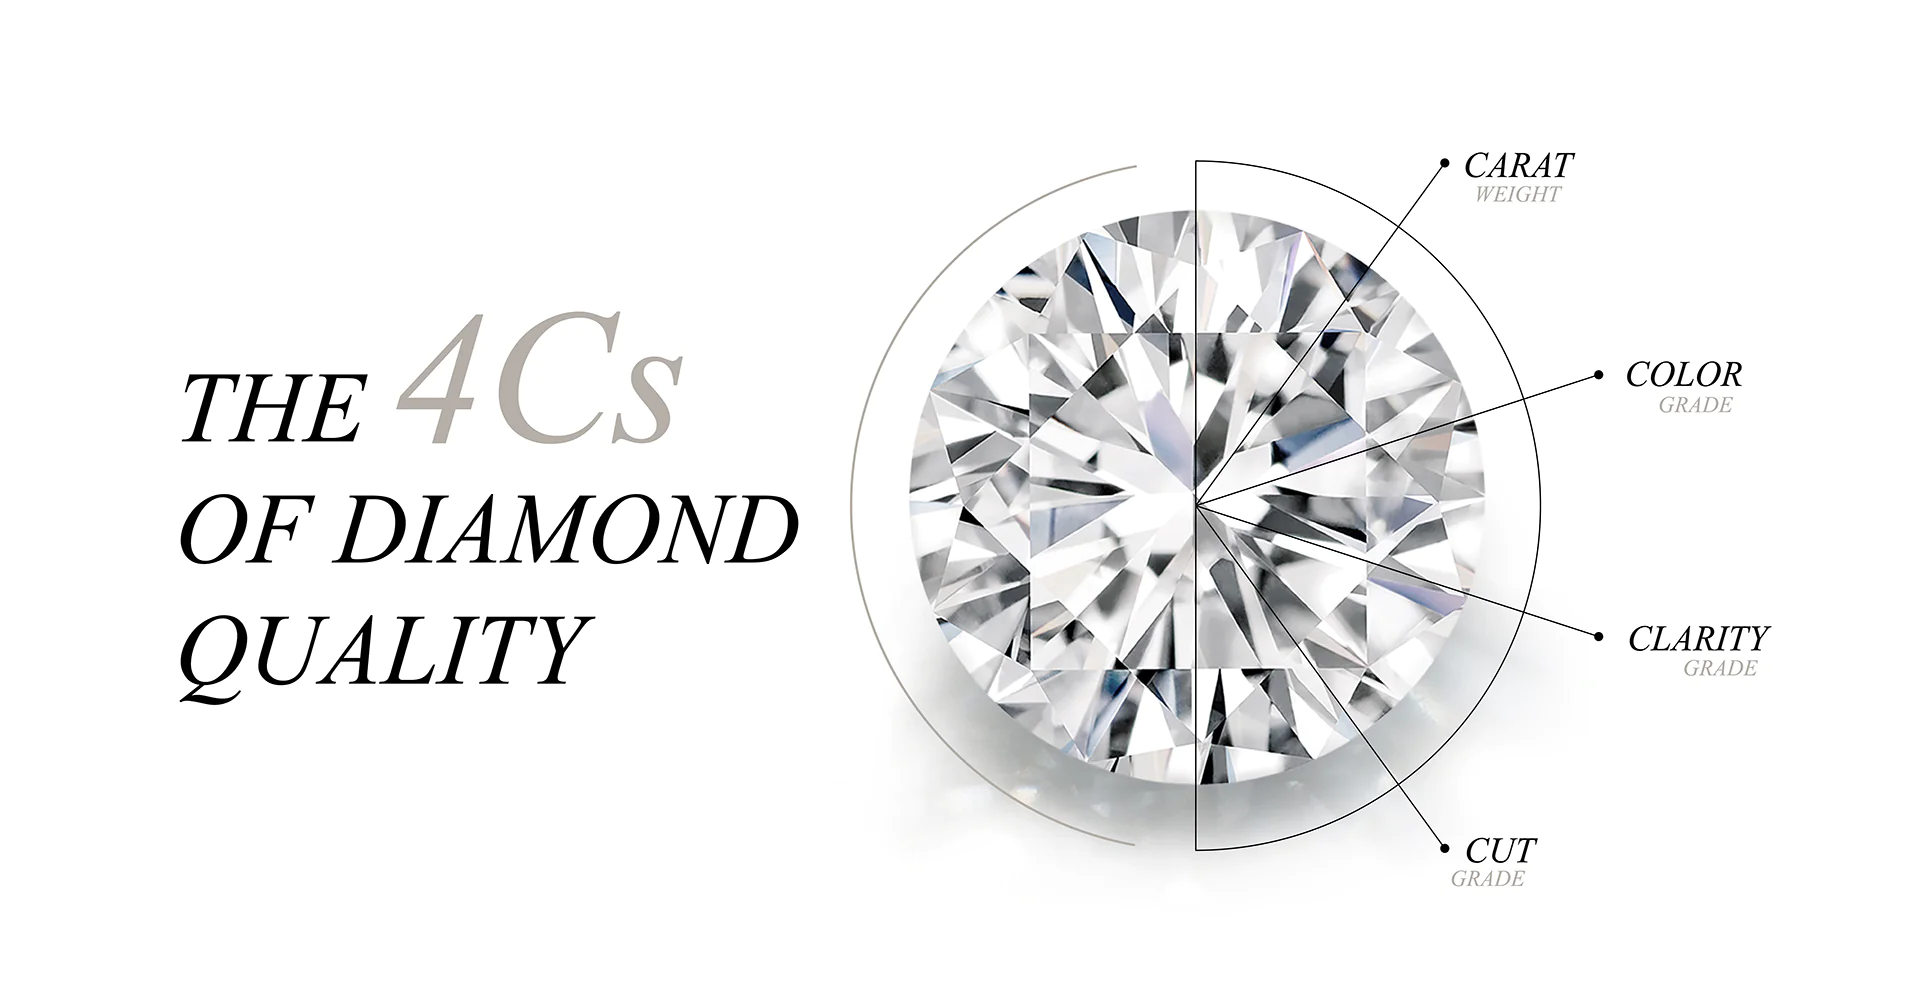 Kim cương TripleX là loại kim cương đạt được tiêu chuẩn hoàn hảo về độ chiếu sáng